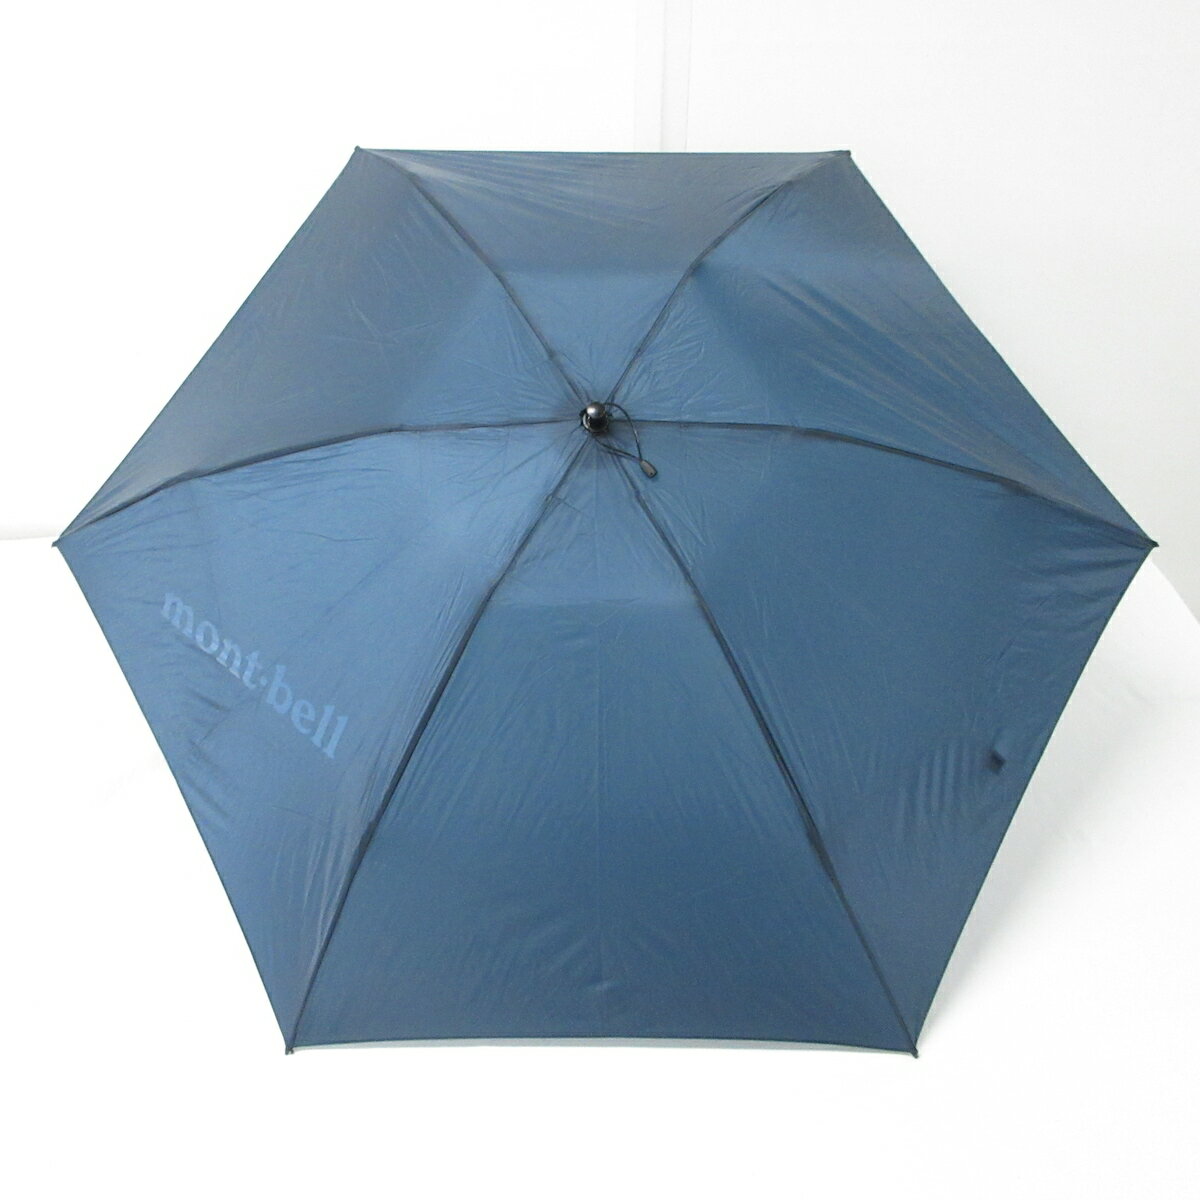 【中古】mont-bell(モンベル) 日傘 折りたたみ日傘 ダークネイビー ナイロン×金属素材